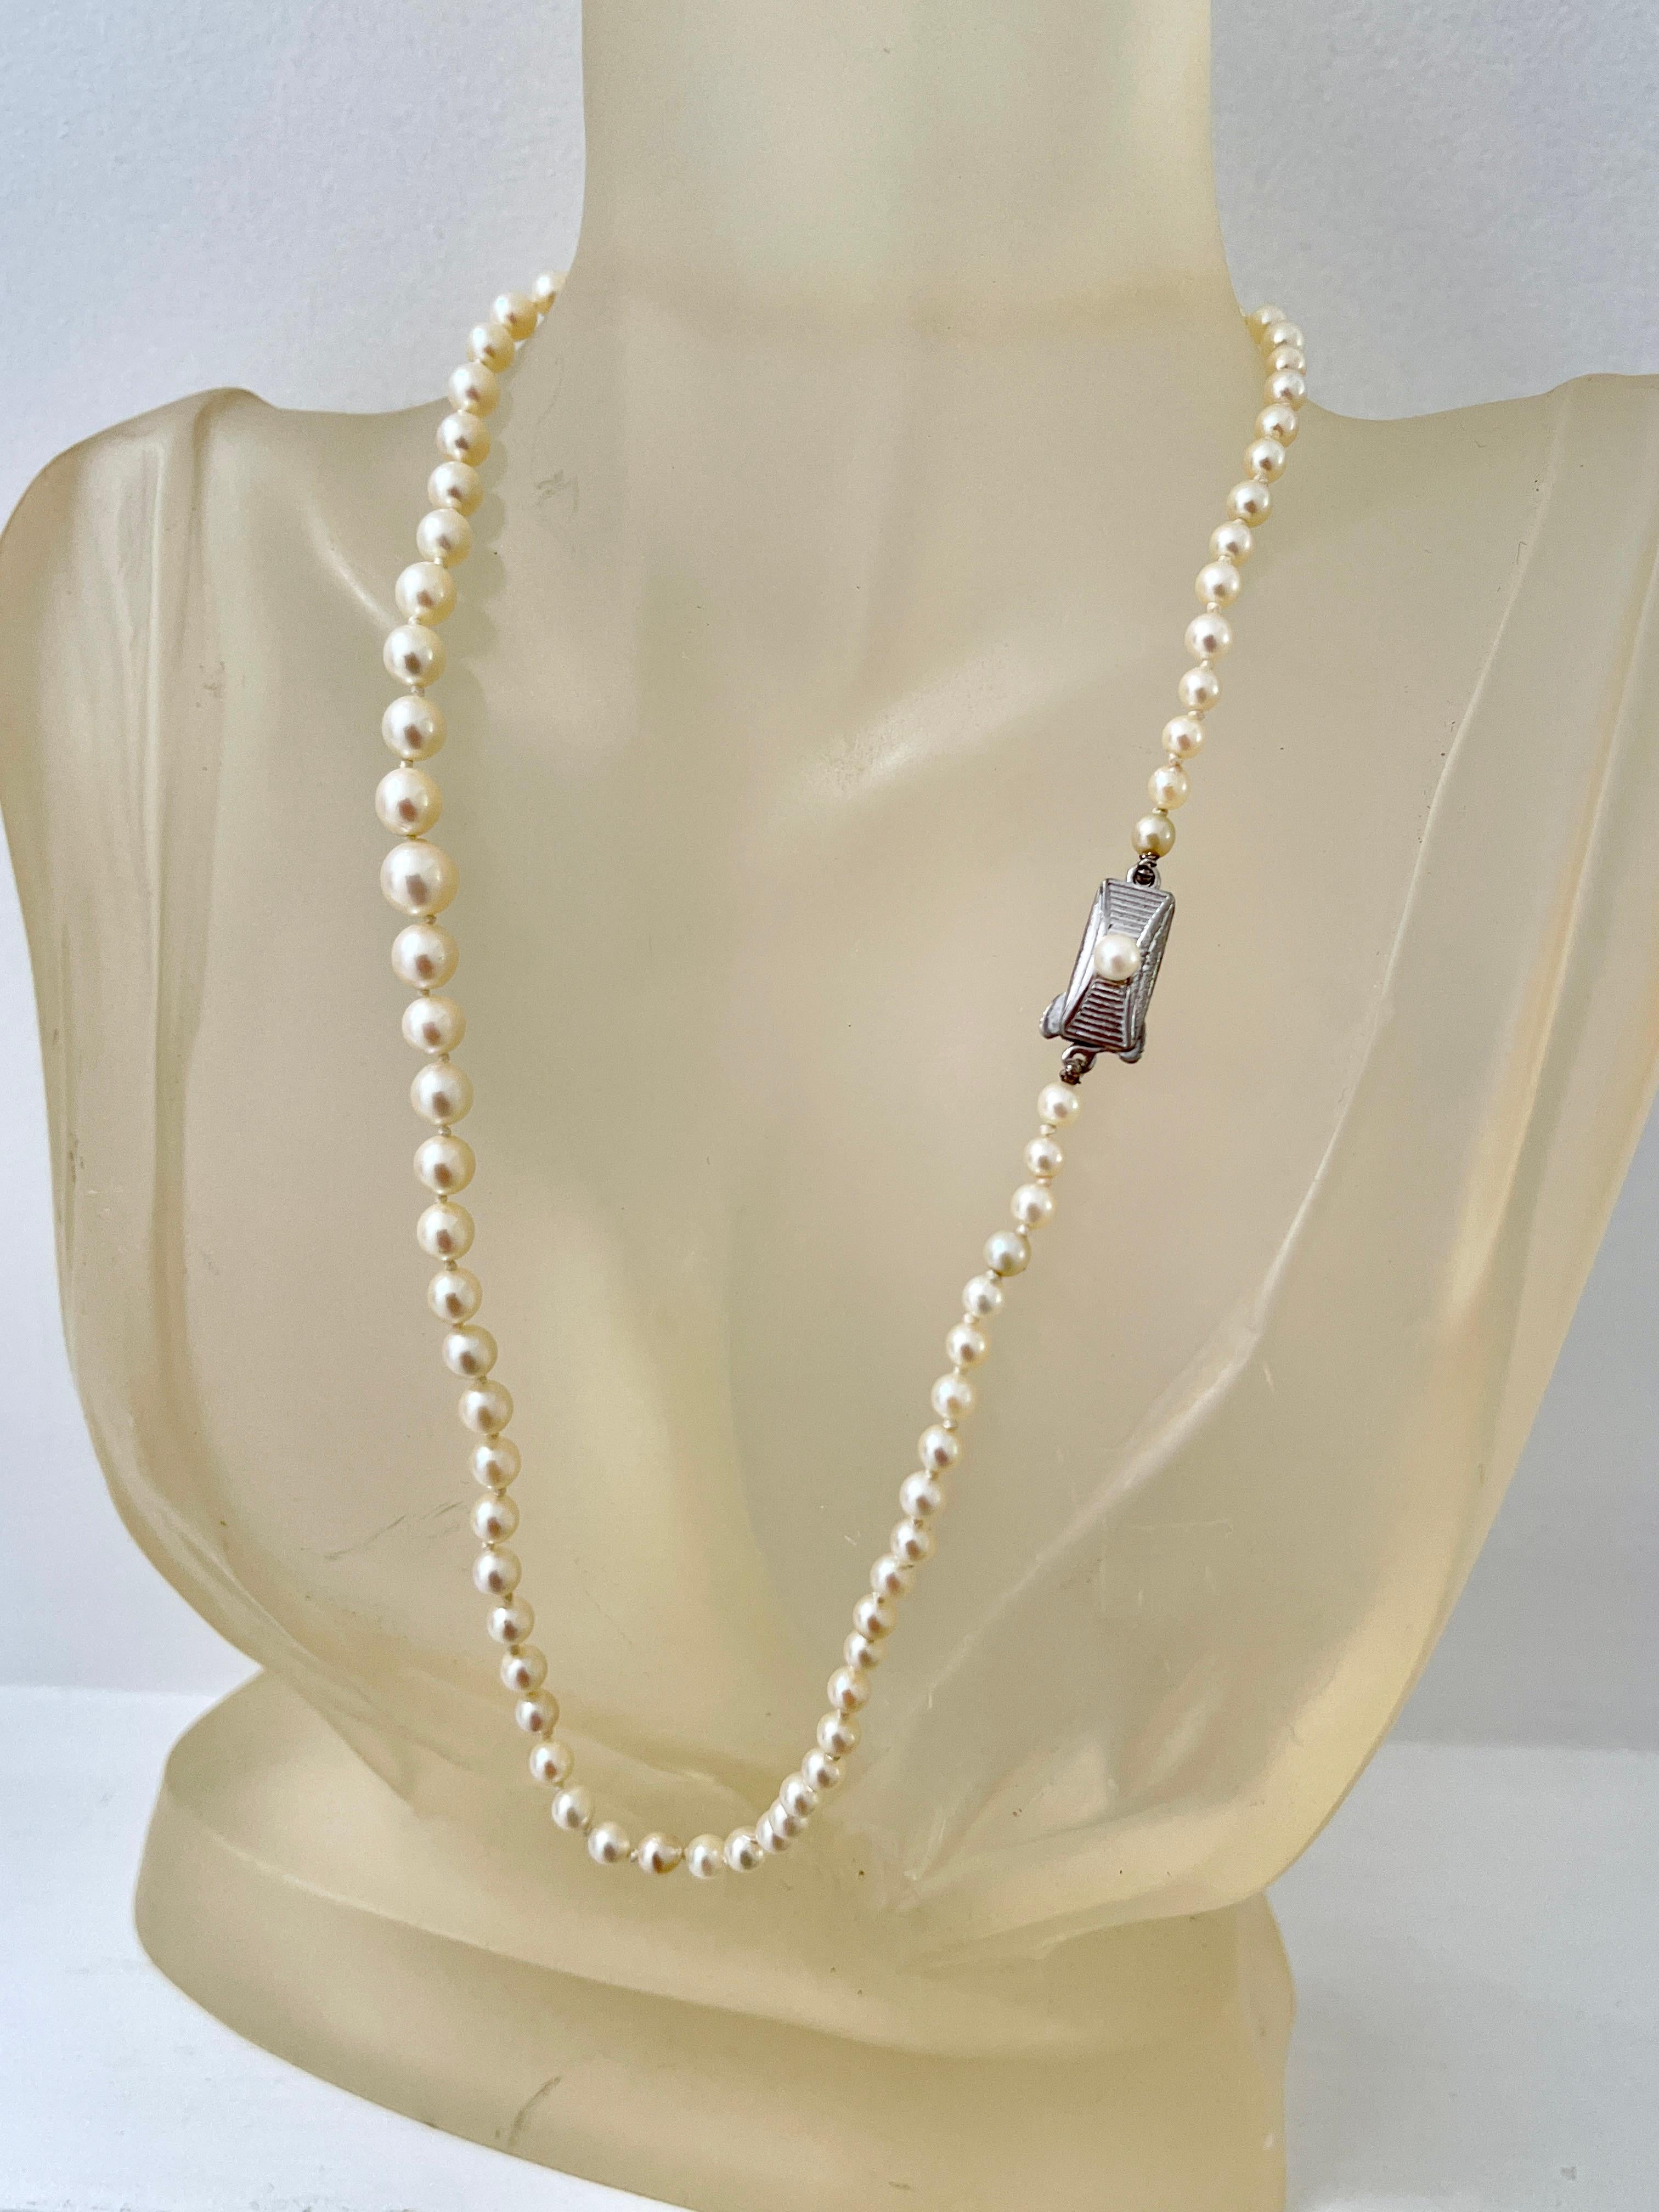 Vintage Mikimoto Feiner Perlenstrang
Mikimoto ist weltweit für seine Perlenqualität und -standards bekannt.  Diese Vintage-Halskette ist mit 79 Akoya-Zuchtperlen aufgereiht, die einen cremig-silbernen Schimmer haben.  Die Perlen sind in der Größe